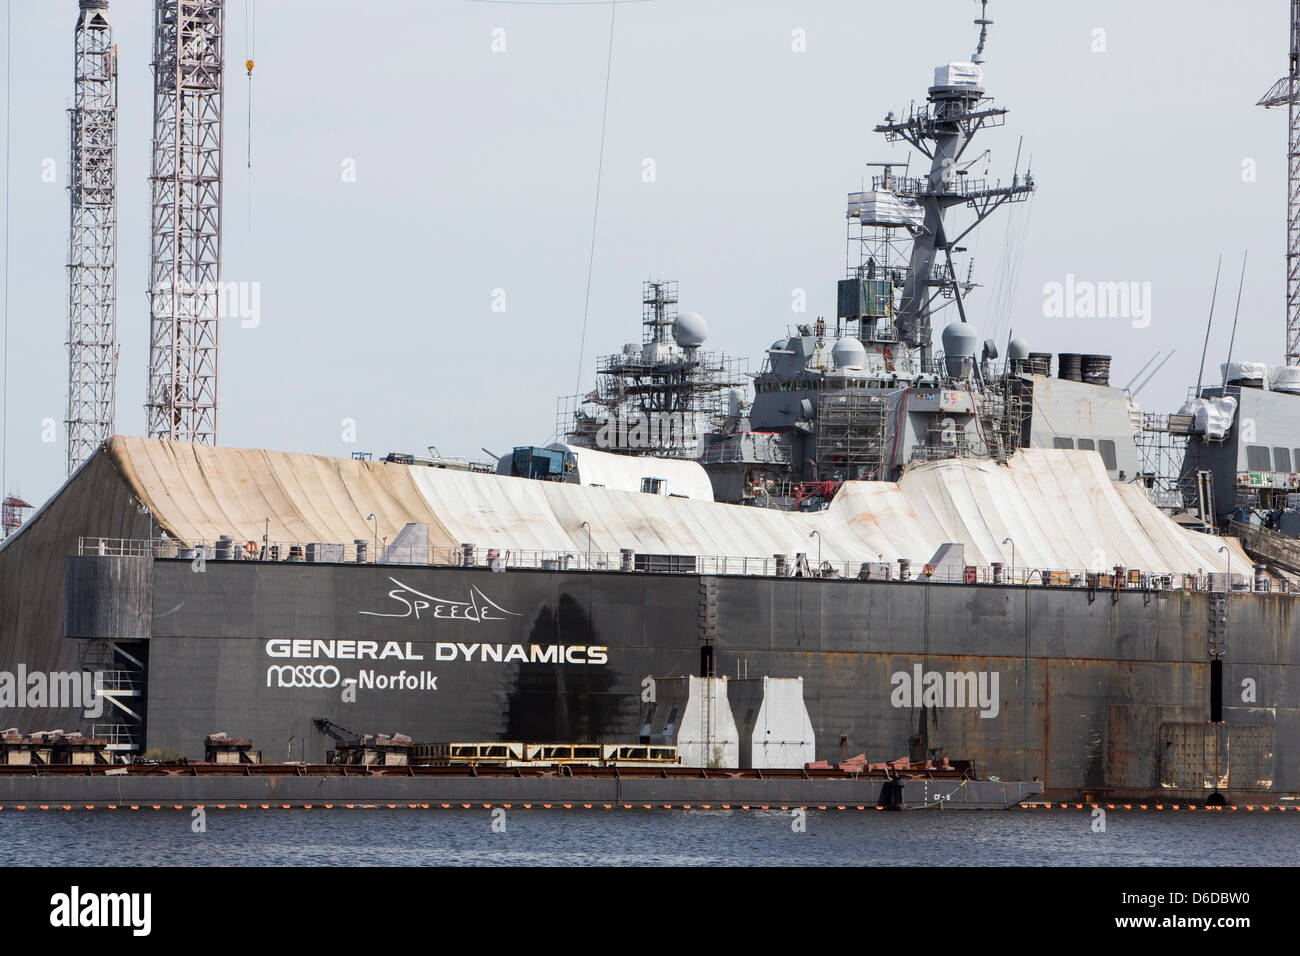 Un destroyer de la classe Arleigh Burke peut être vu dans une cale sèche de réparation à la General Dynamics NASSCO shipyard à Norfolk, en Virginie Banque D'Images